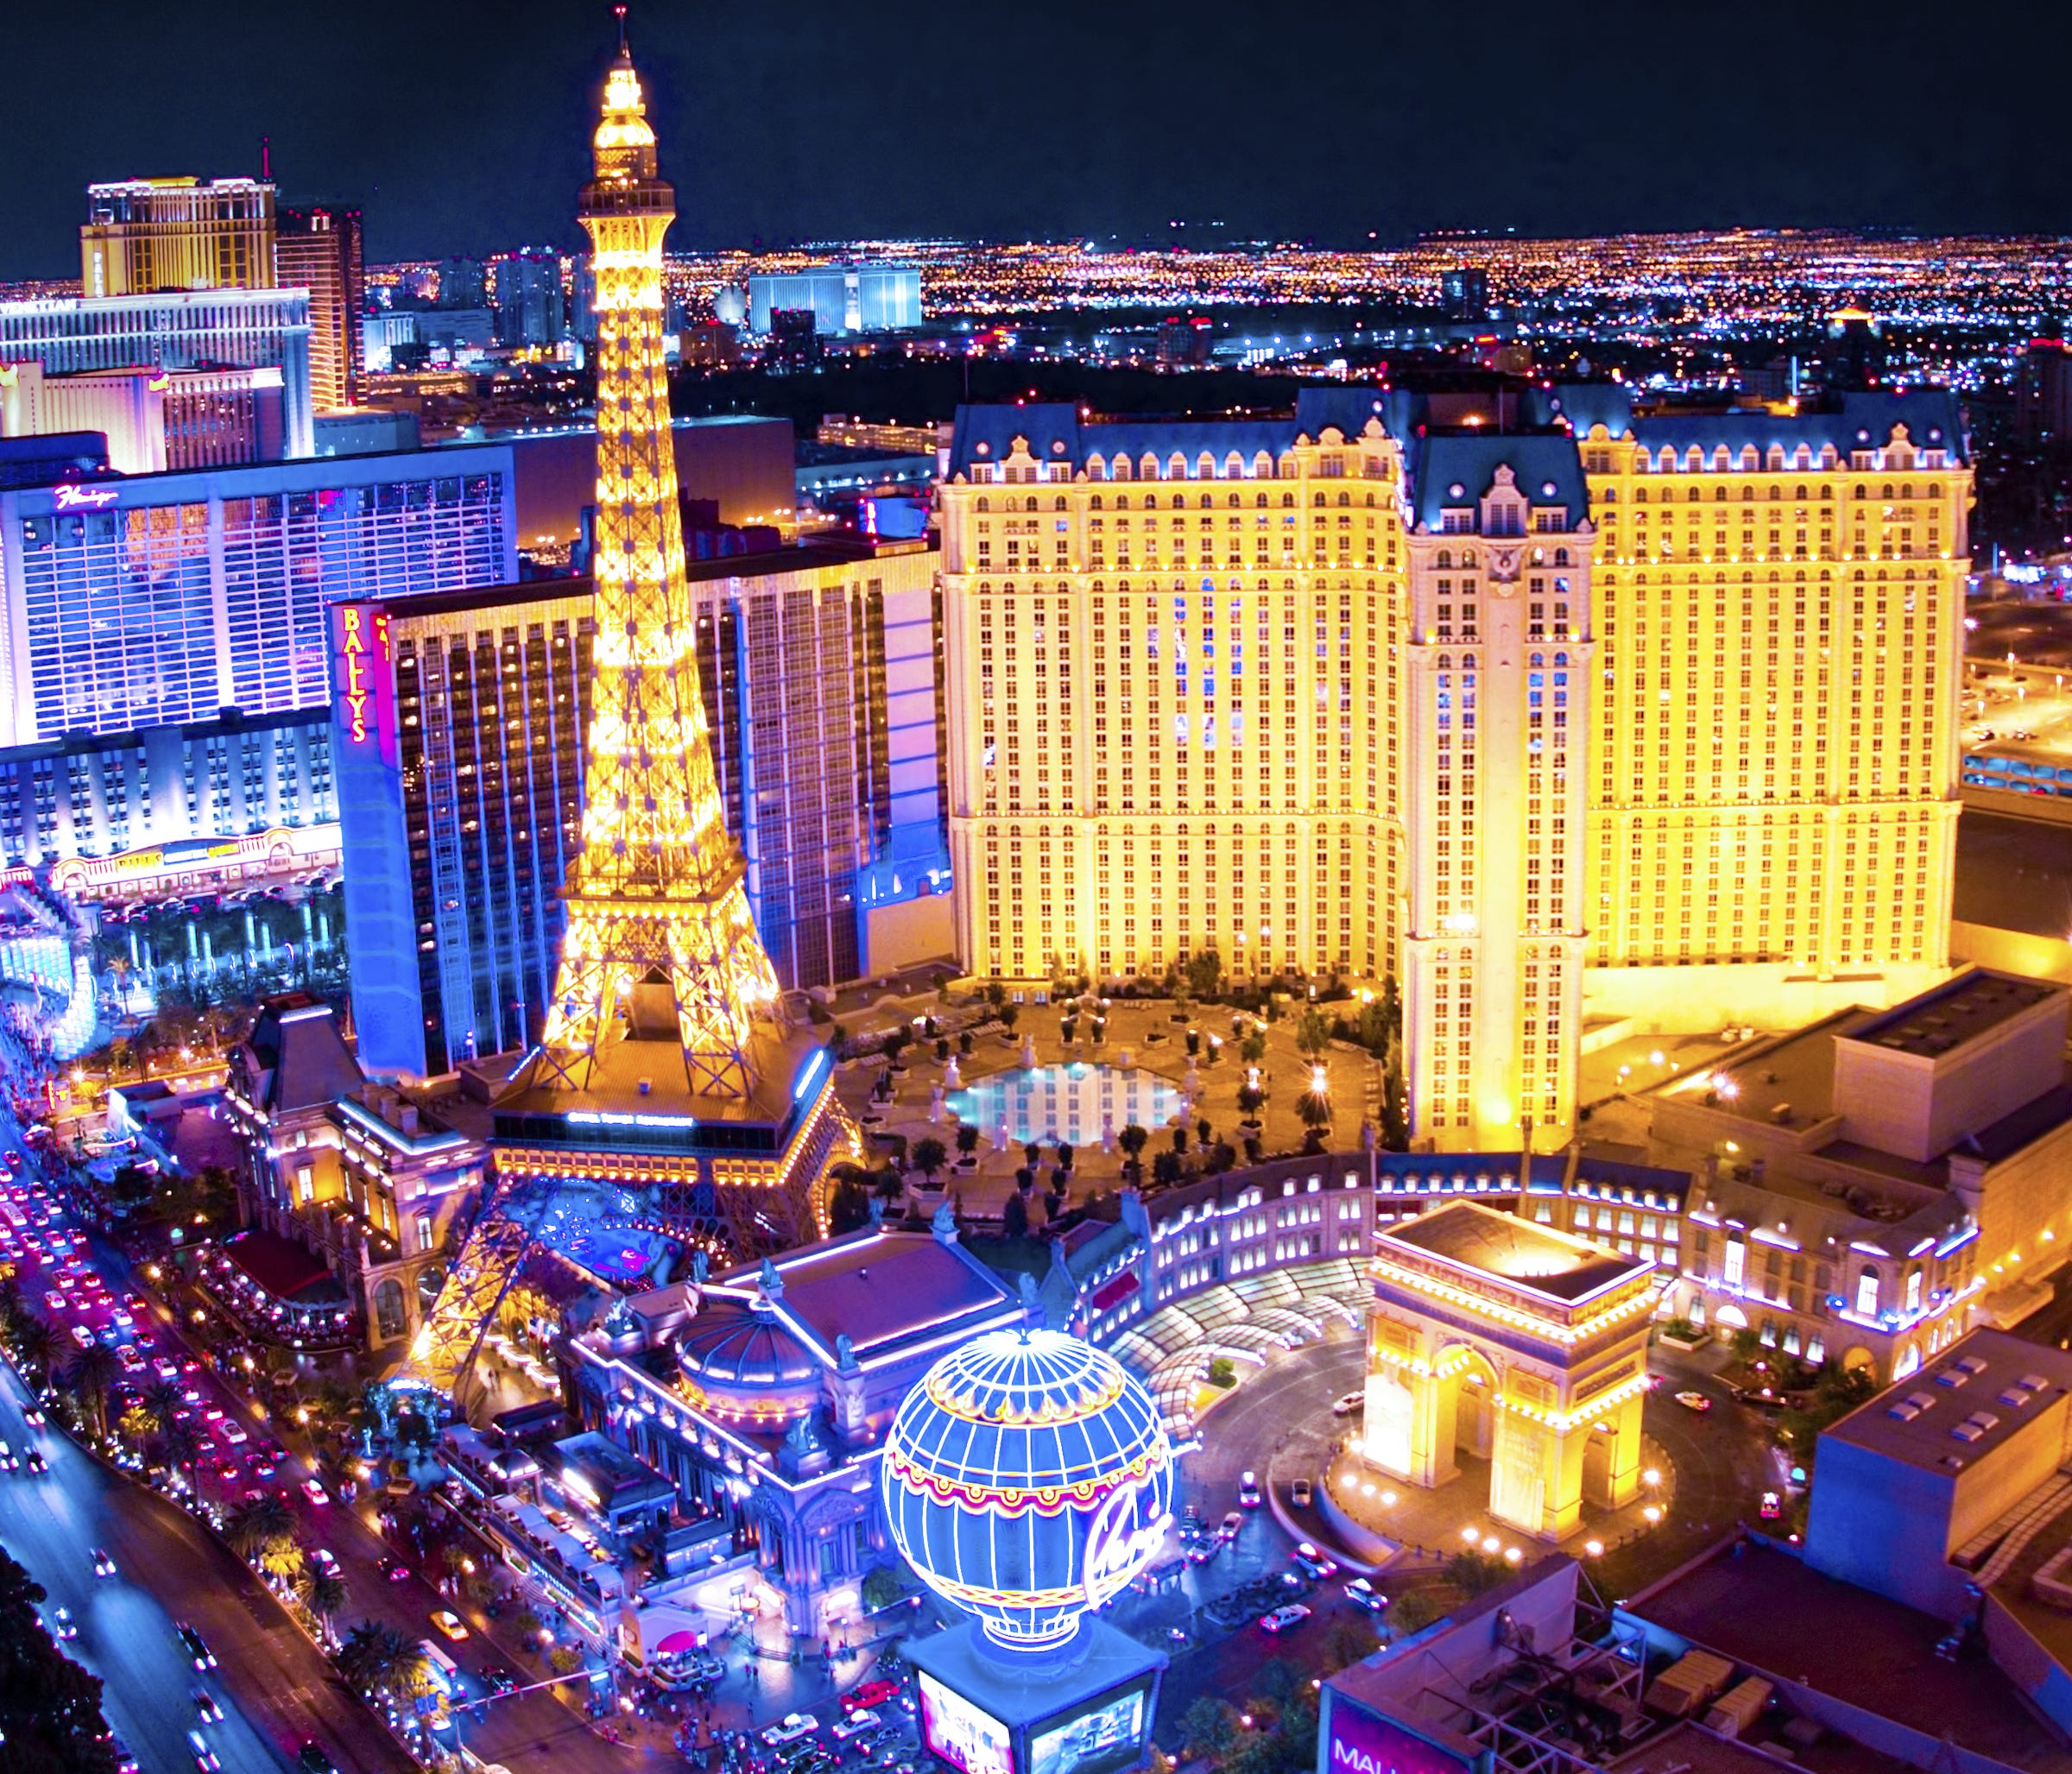 The Paris Las Vegas casino resort.